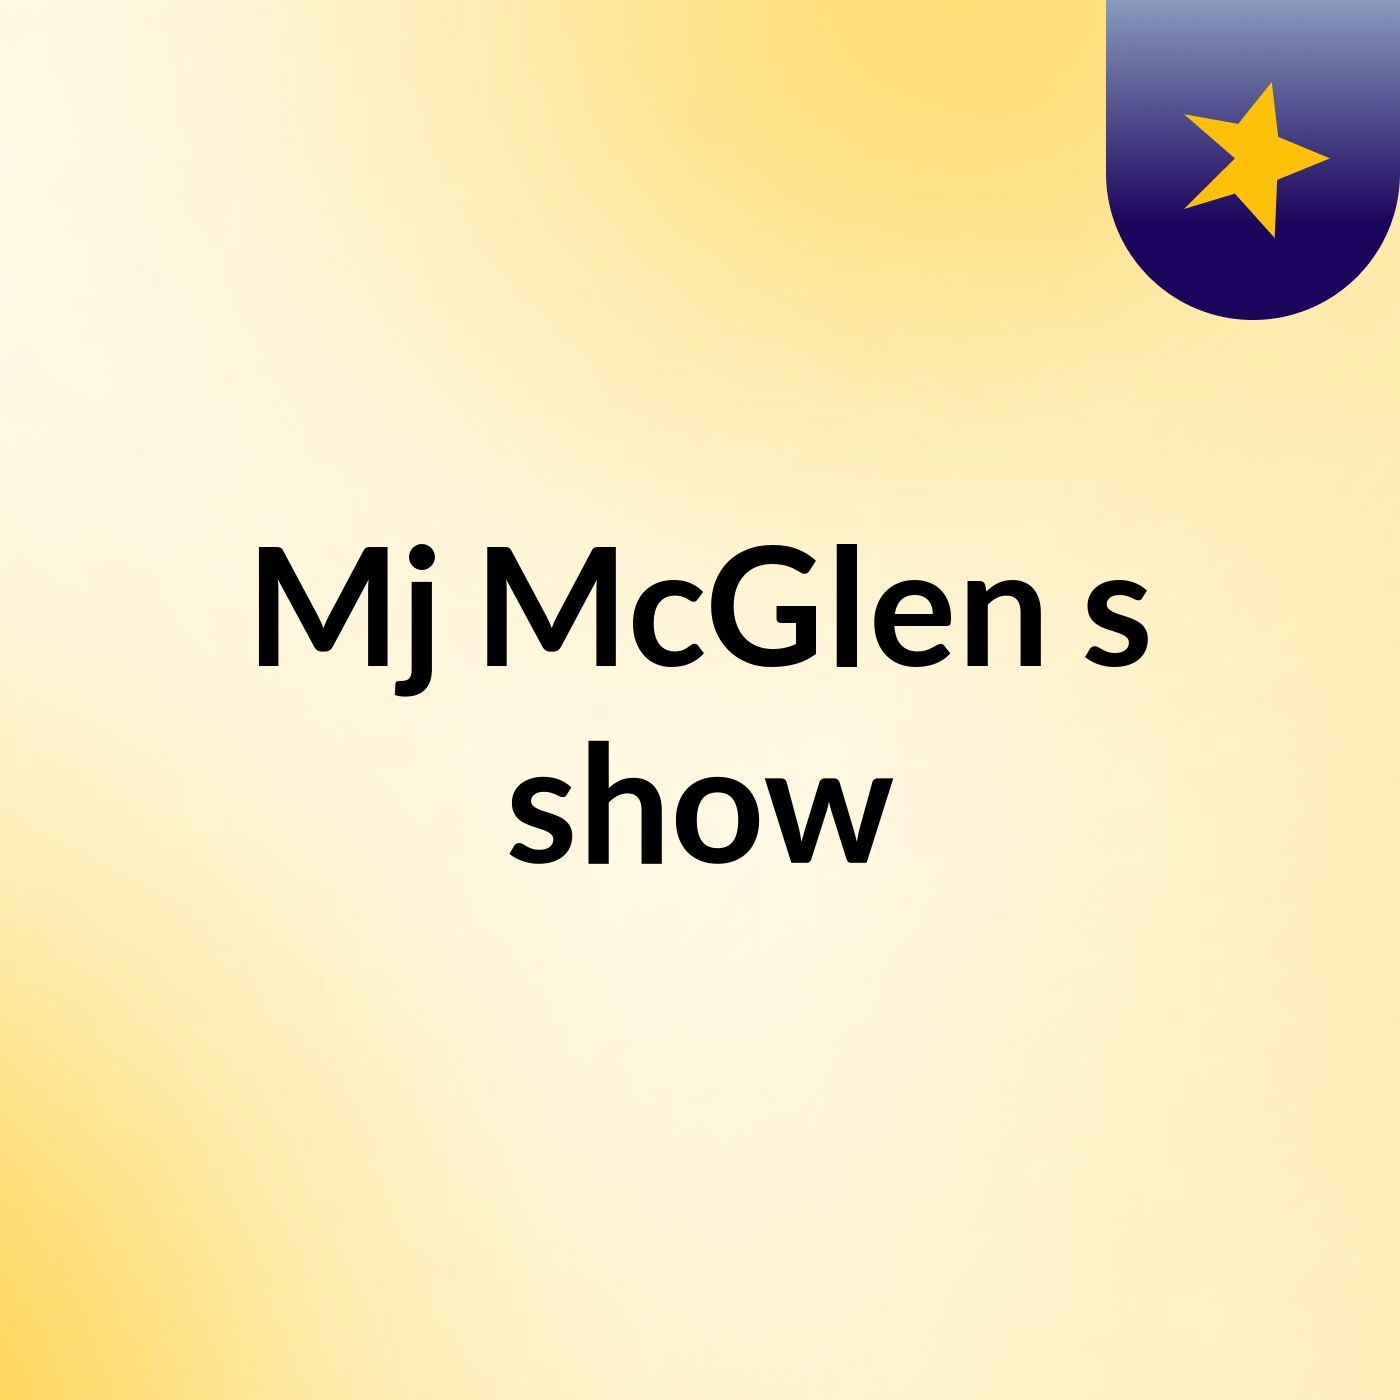 Episode 6 - Mj McGlen's show